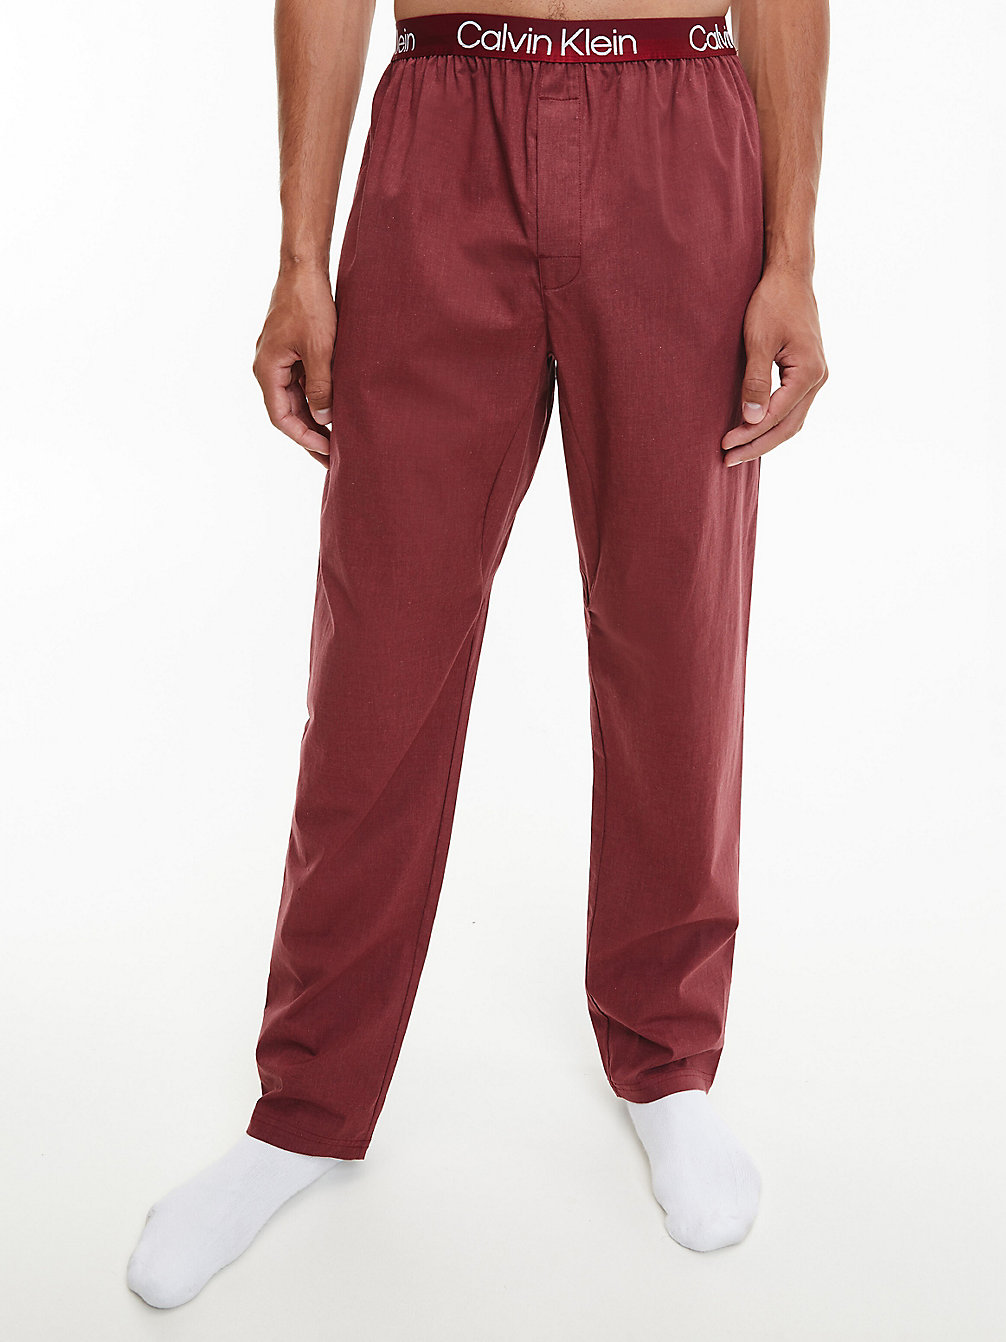 RED CARPET HEATHER > Spodnie Od Piżamy - Modern Structure > undefined Mężczyźni - Calvin Klein